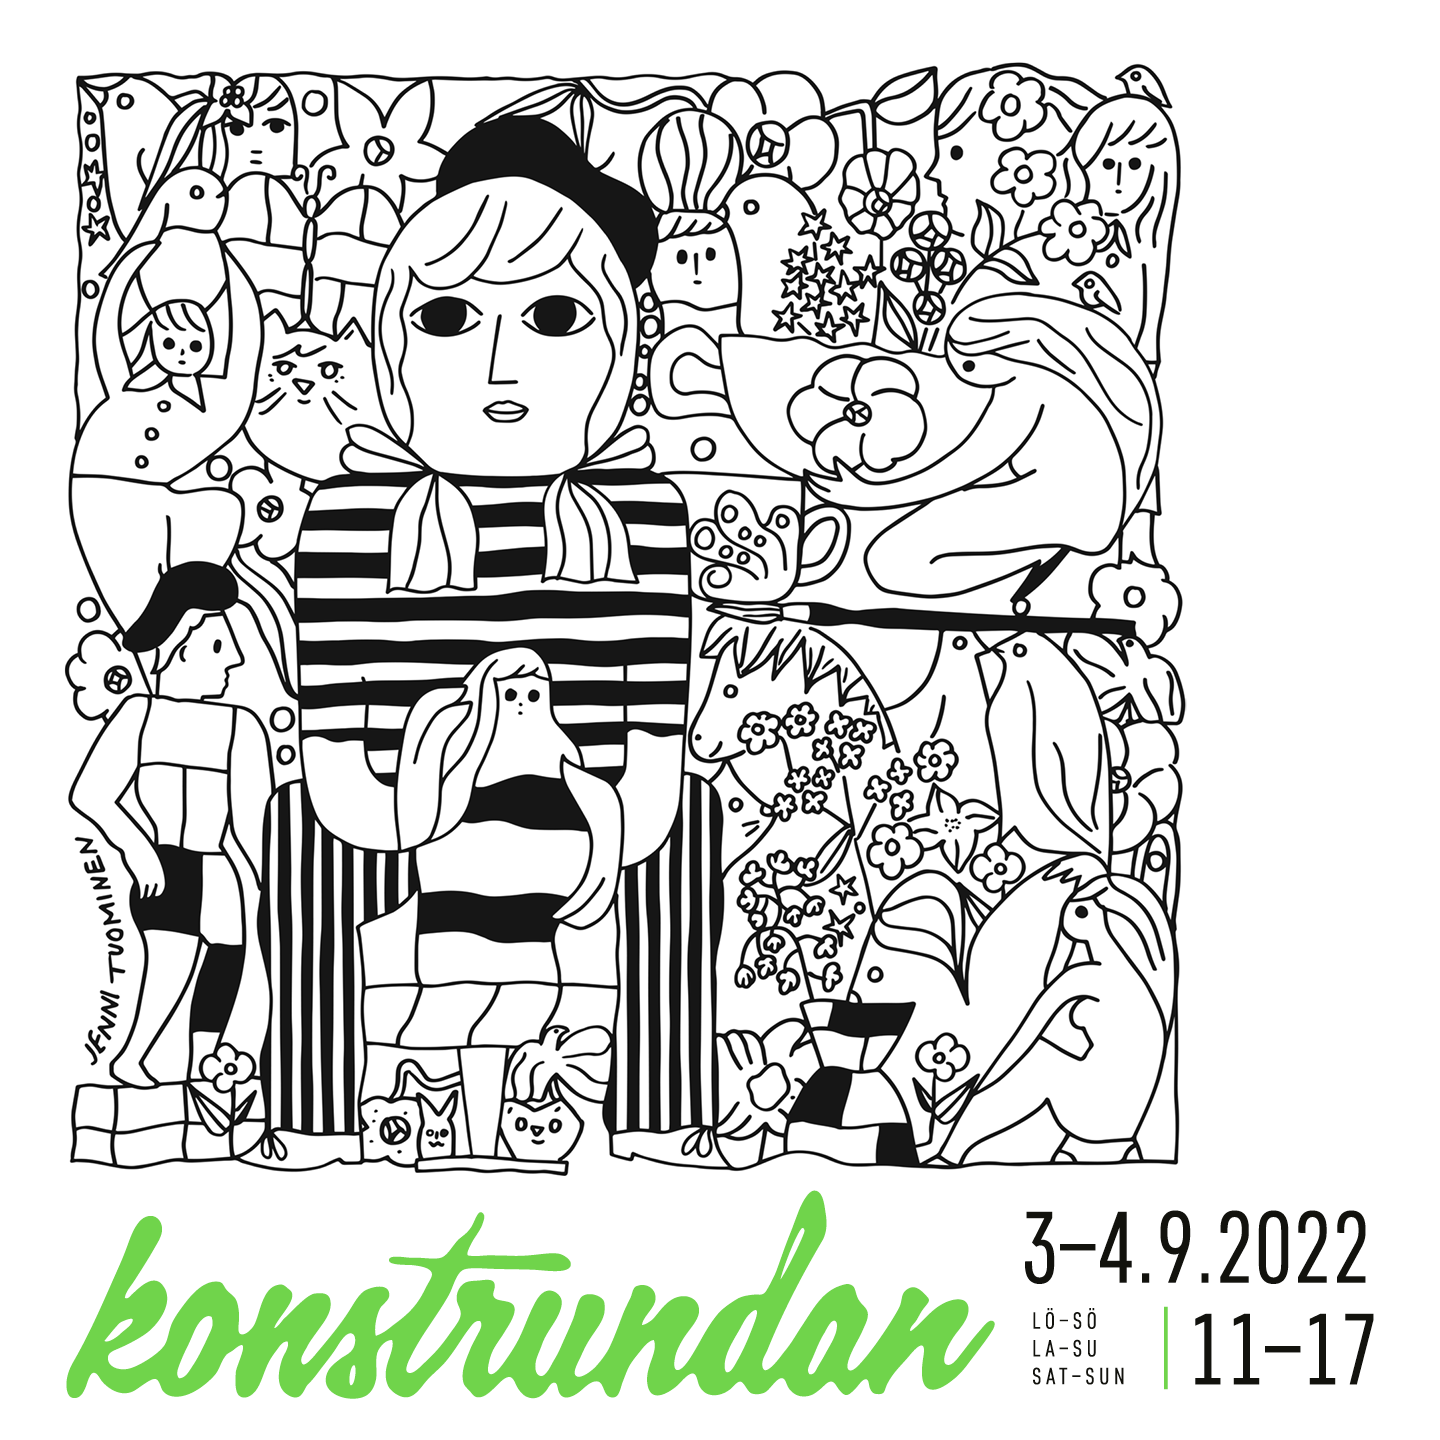 Illustration av Jenni Tuominen för Konstrundan 2021. Svartvit bild med människofigur i mitten, omringad av andra människor, djur och växter. 